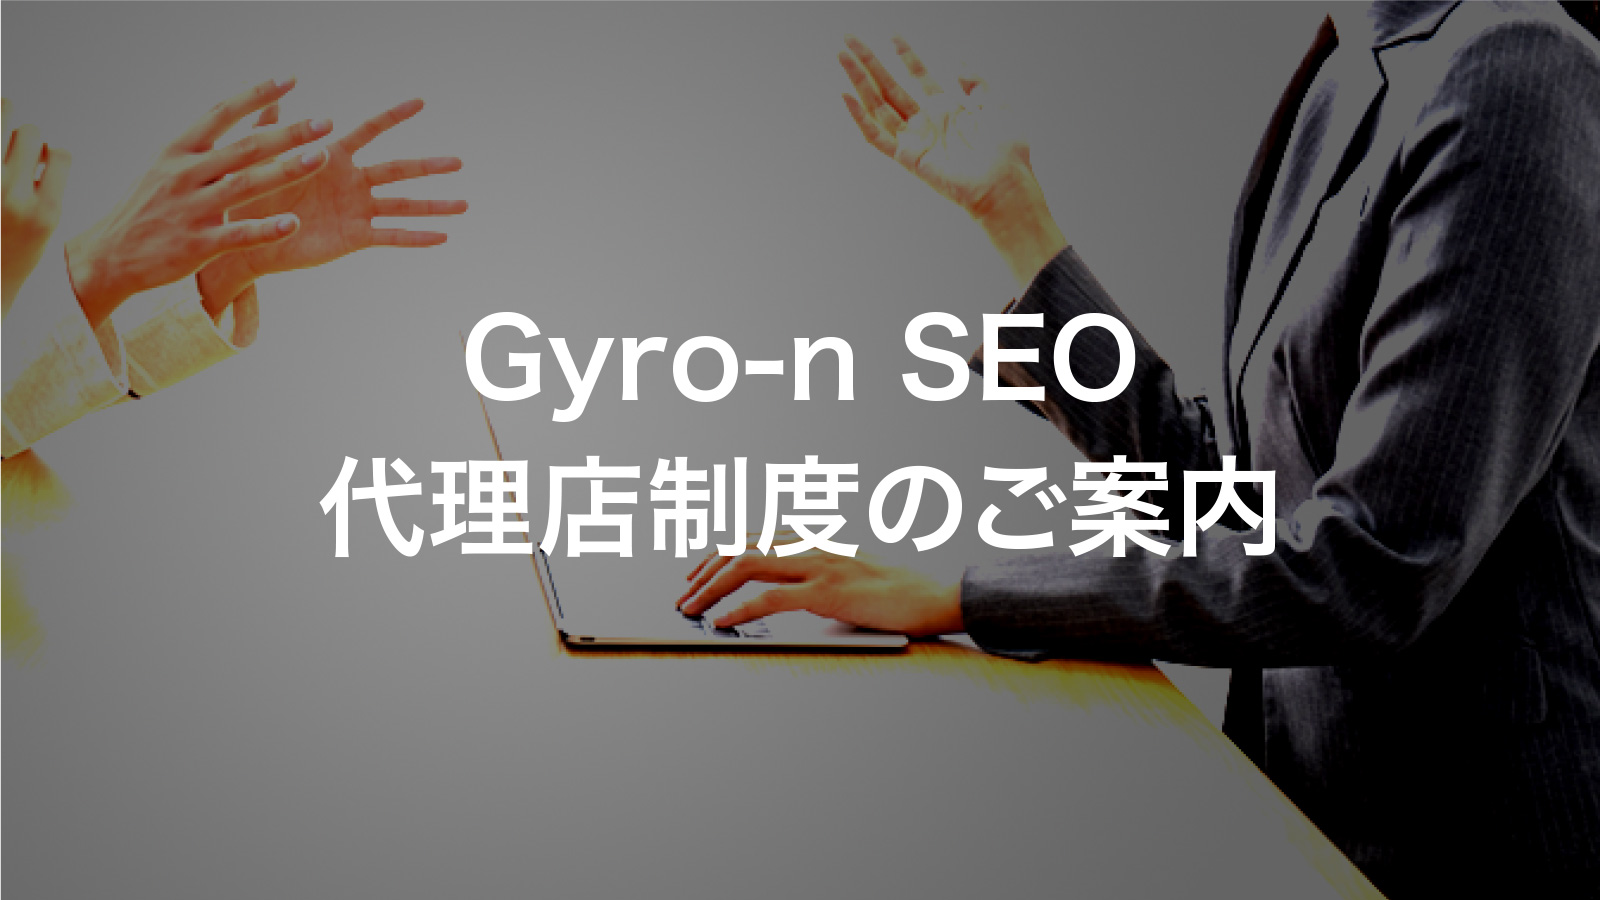 Gyro-n SEO 代理店制度